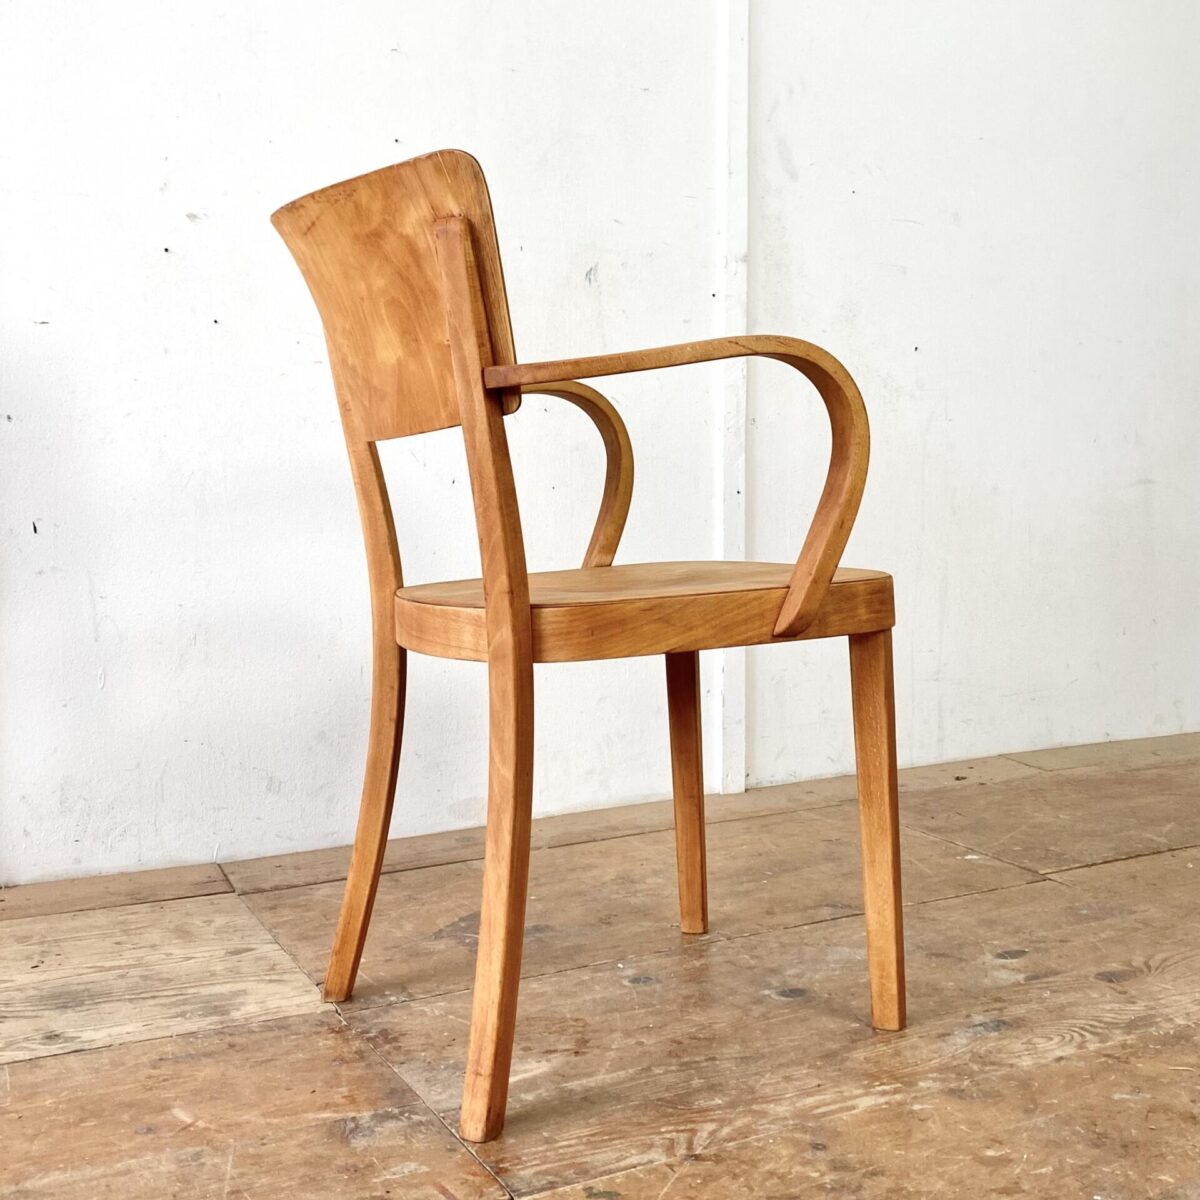 Deuxieme.shop seltener Bugholz Sessel. Swissdesign 50er Jahre. Horgen Glarus Armlehnstuhl von 1958. Sitz und Lehne aus Sperrholz, formverleimt. Die restlichen Teile sind aus Buche Vollholz, Dampfgebogen. Der Stuhl ist in stabilem restaurierten Zustand, fehlende Furnier Ausbrüche wurden frisch eingesetzt, die wackligen Vorderbeine neu eingeleimt. Die Holz Oberflächen sind geschliffen und geölt. 